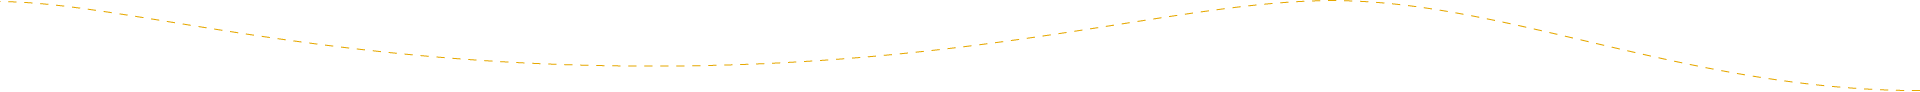 dx2brasil-linha-amarela-tracejada